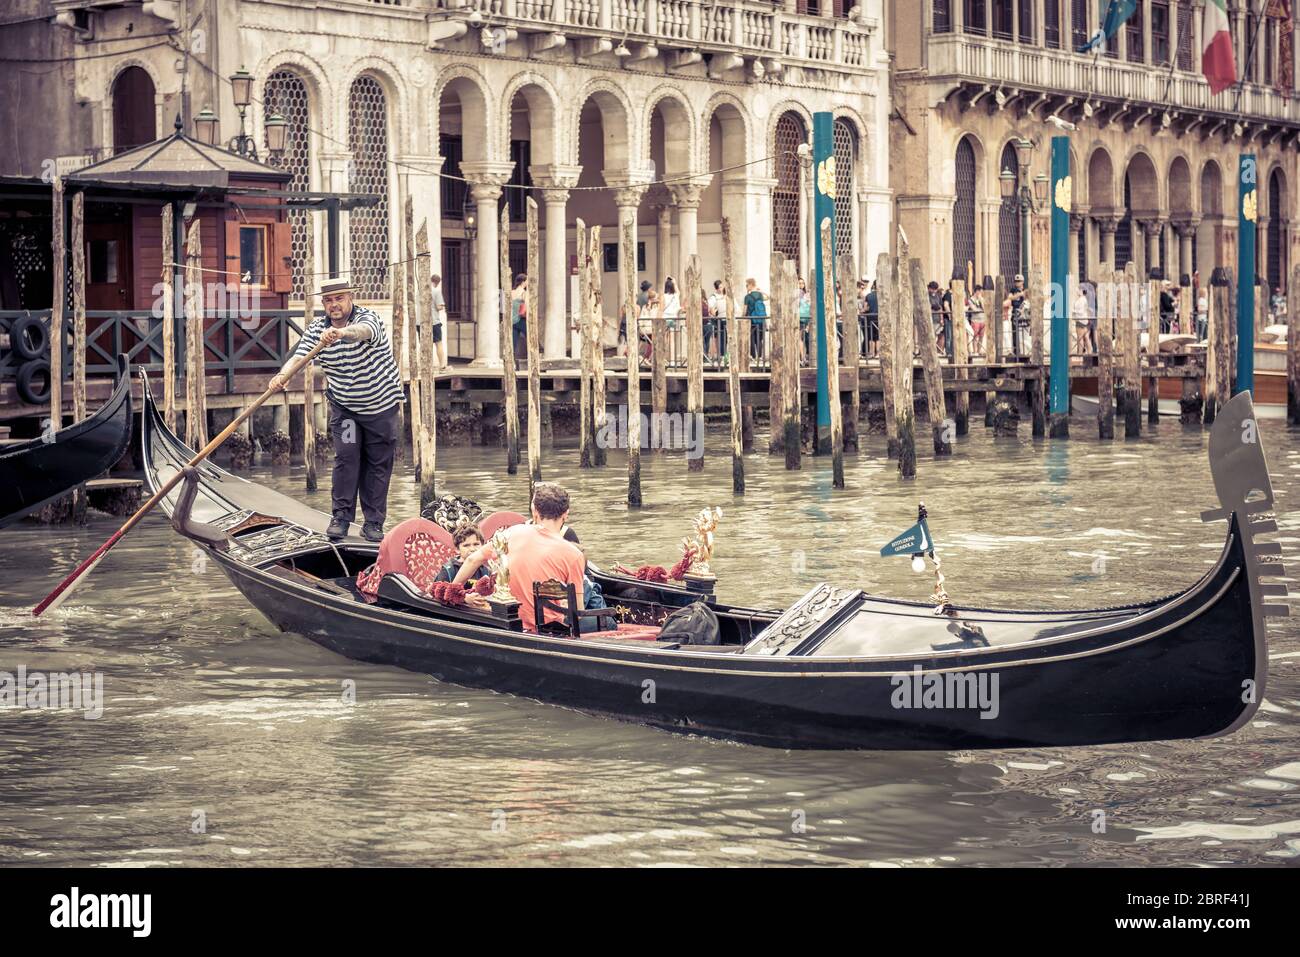 Venezia, Italia - 21 maggio 2017: La gondola con i turisti galleggia lungo il Canal Grande. La gondola è il mezzo di trasporto turistico più attraente di Venezia. Foto Stock